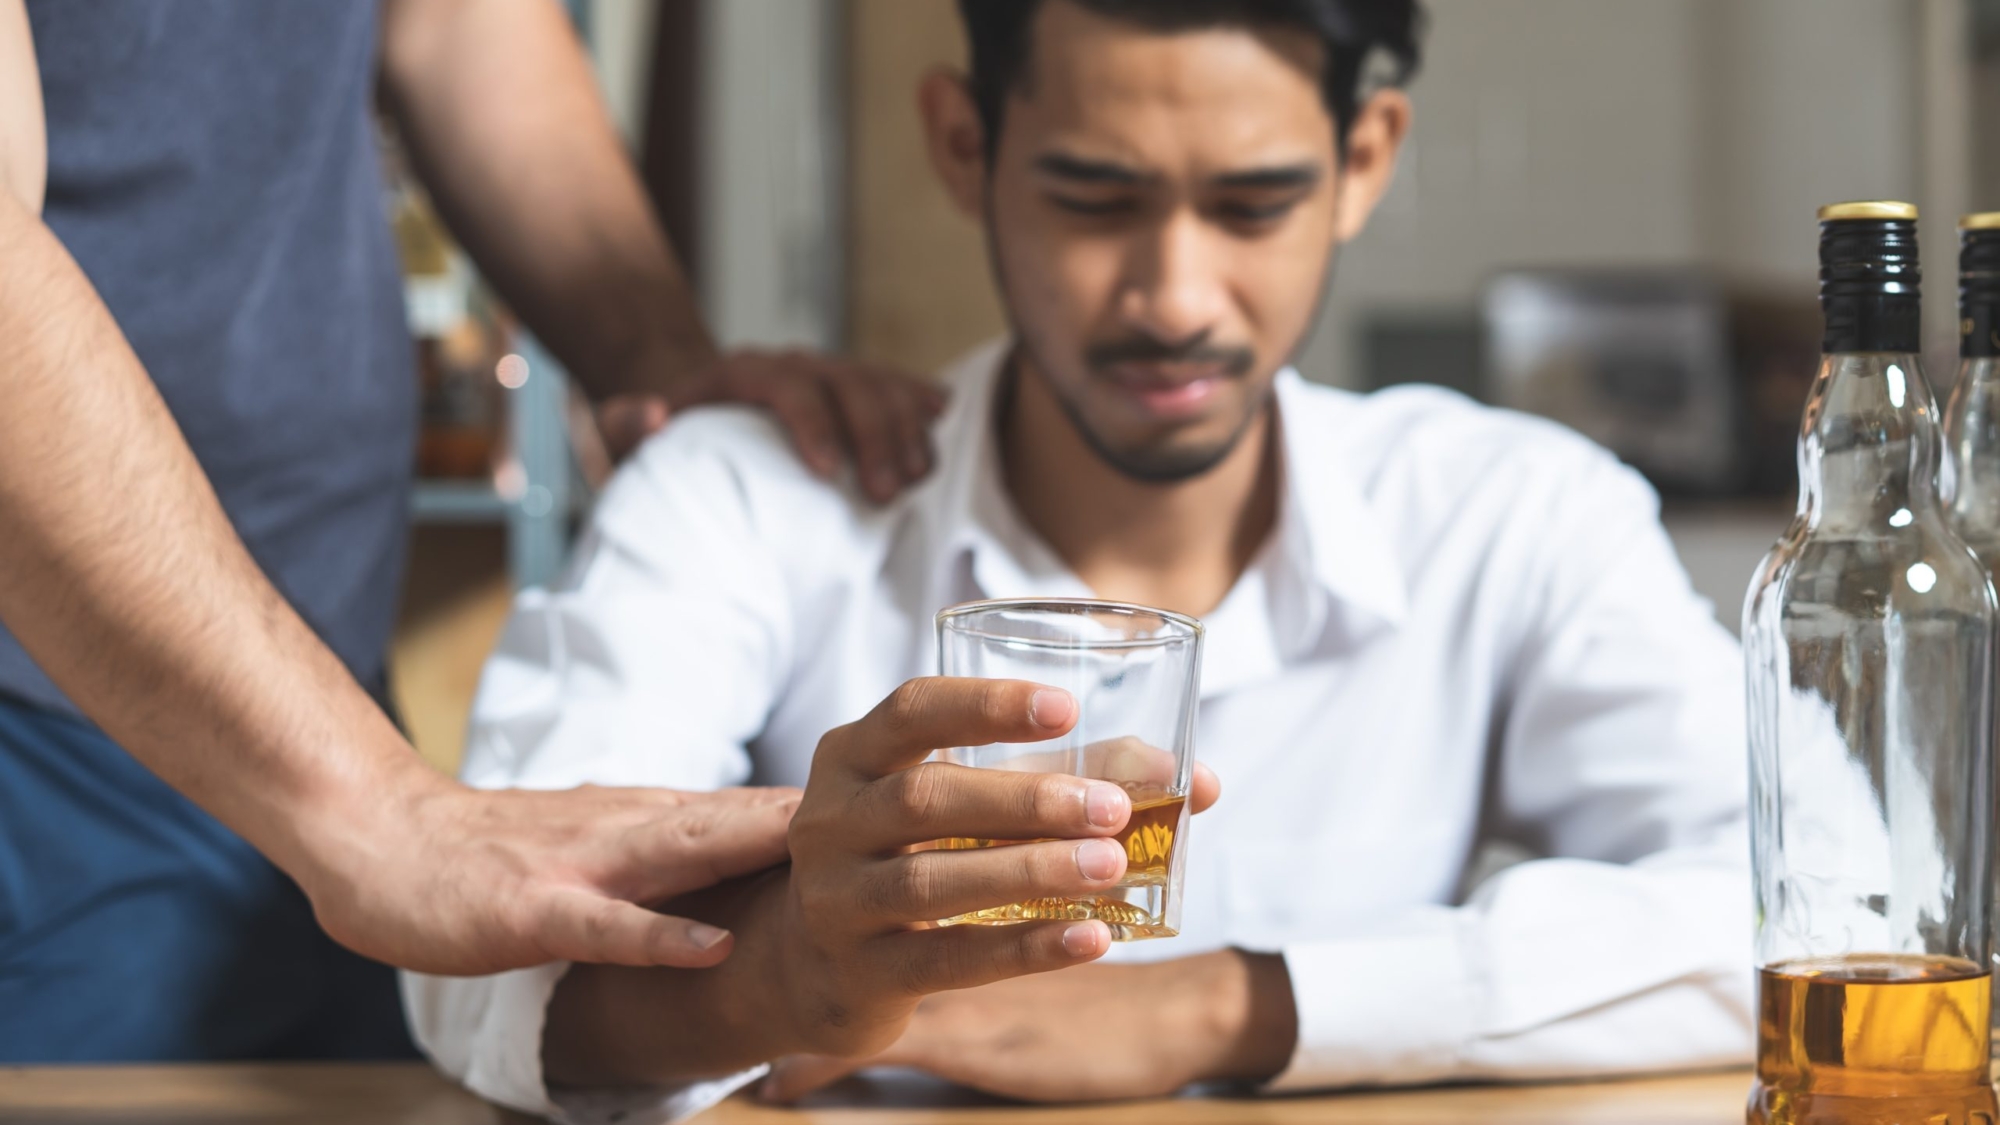 How Do I Know If I Am an Alcoholic?